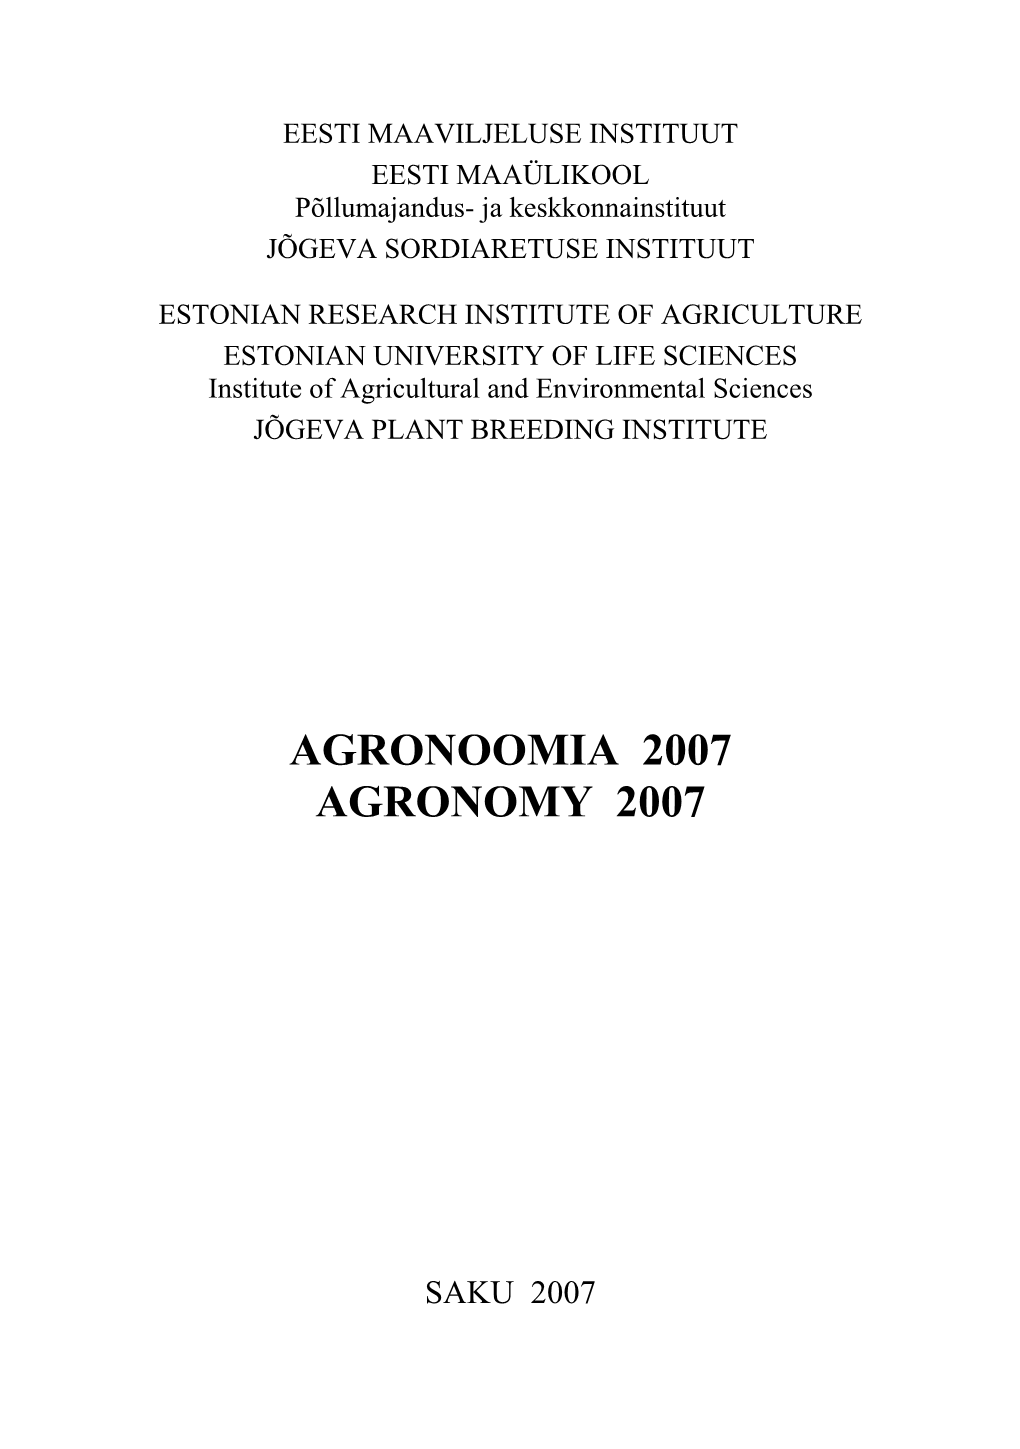 Agronoomia 2007 Agronomy 2007